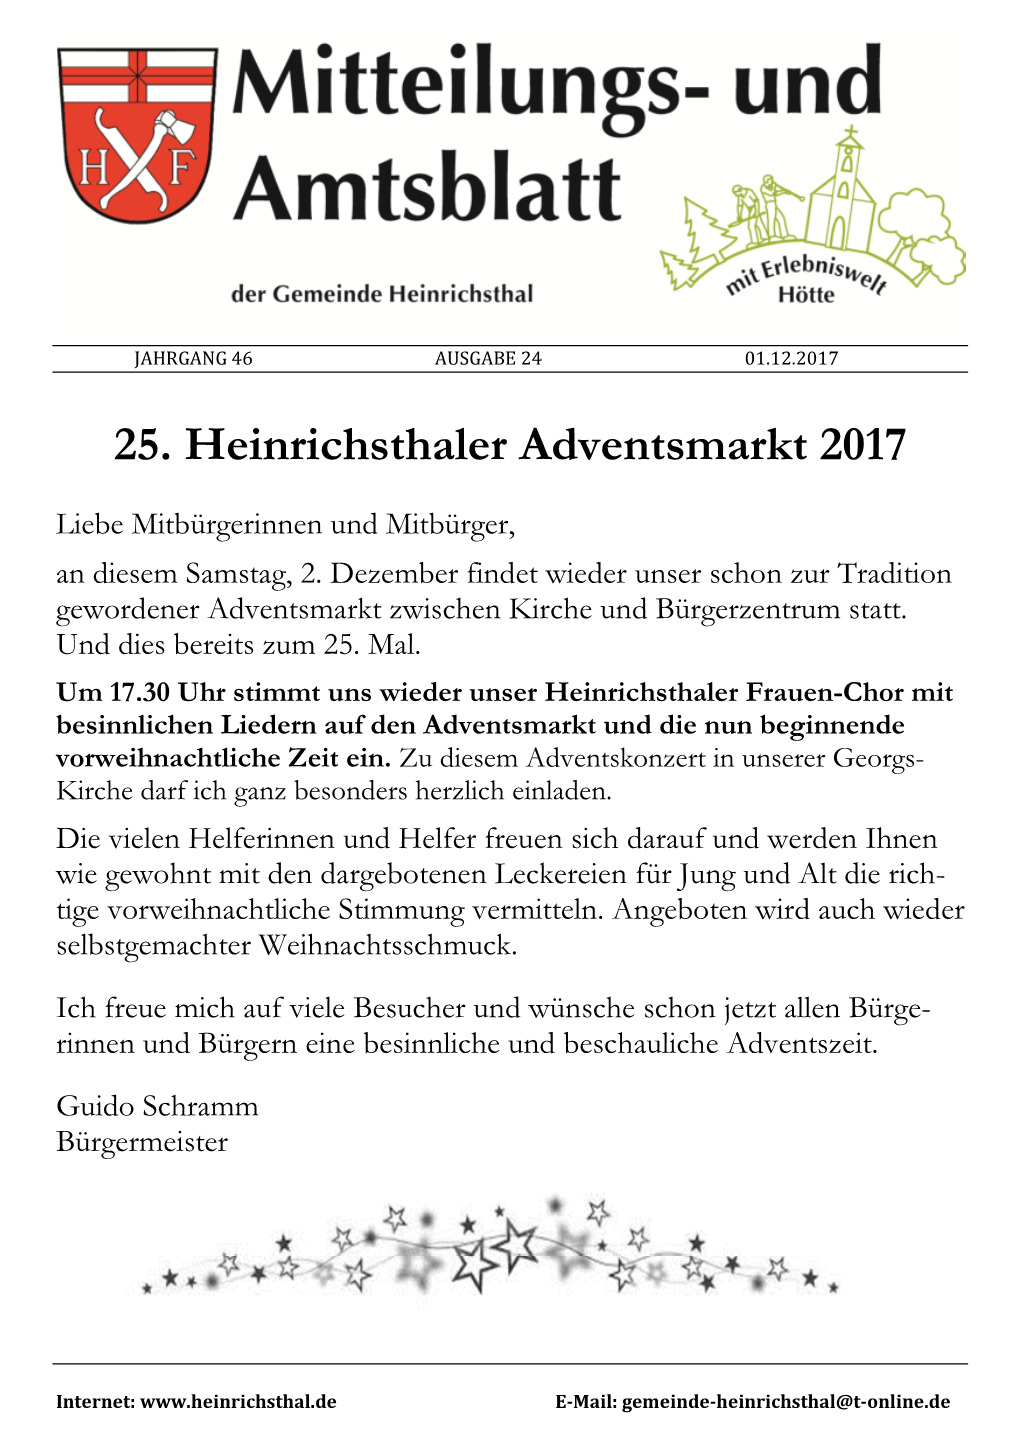 25. Heinrichsthaler Adventsmarkt 2017